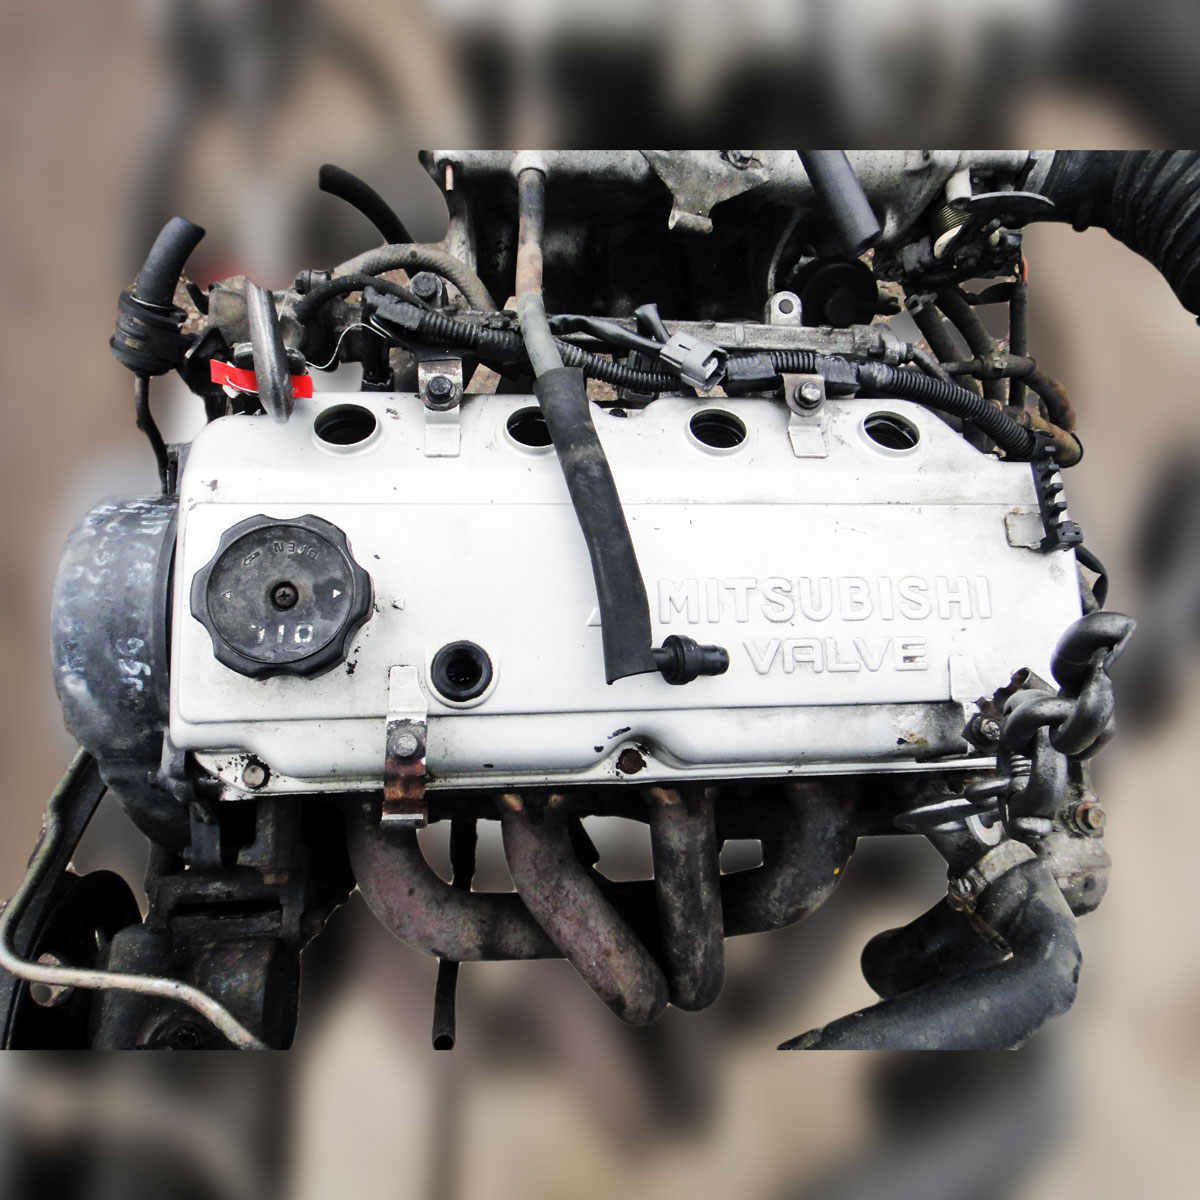 Двигатель митсубиси 4g64: характеристика, конструкция, особенности, обслуживание, ремонт, тюнинг